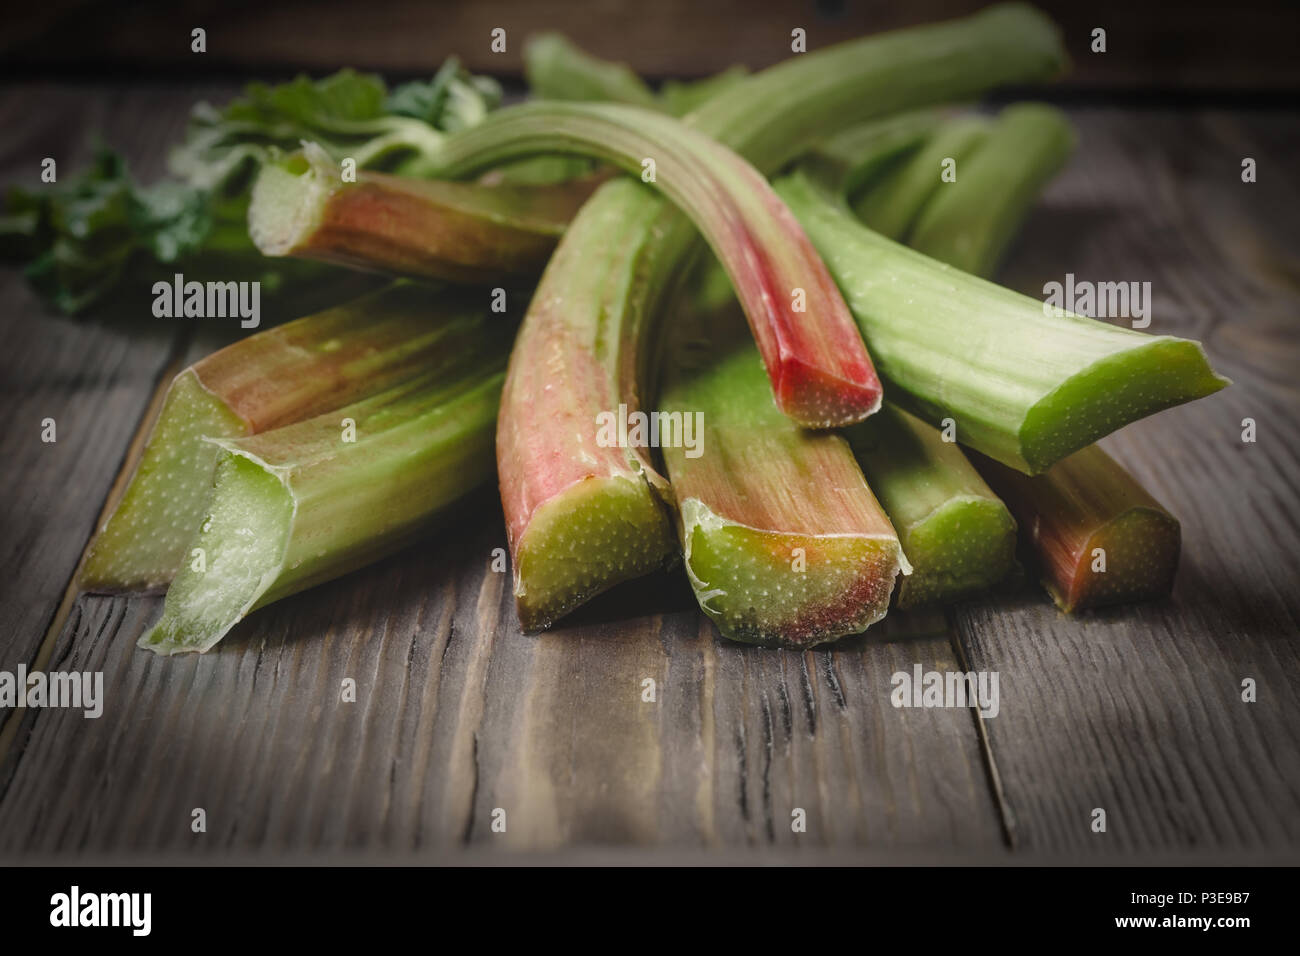 Stämme der frische junge Rhabarber Zutaten für Lebensmittel Rezepte gesunde Ernährung detox Bio Lebensmittel Gemüse auf Holz- Hintergrund, Low Key kopieren Raum fo Stockfoto